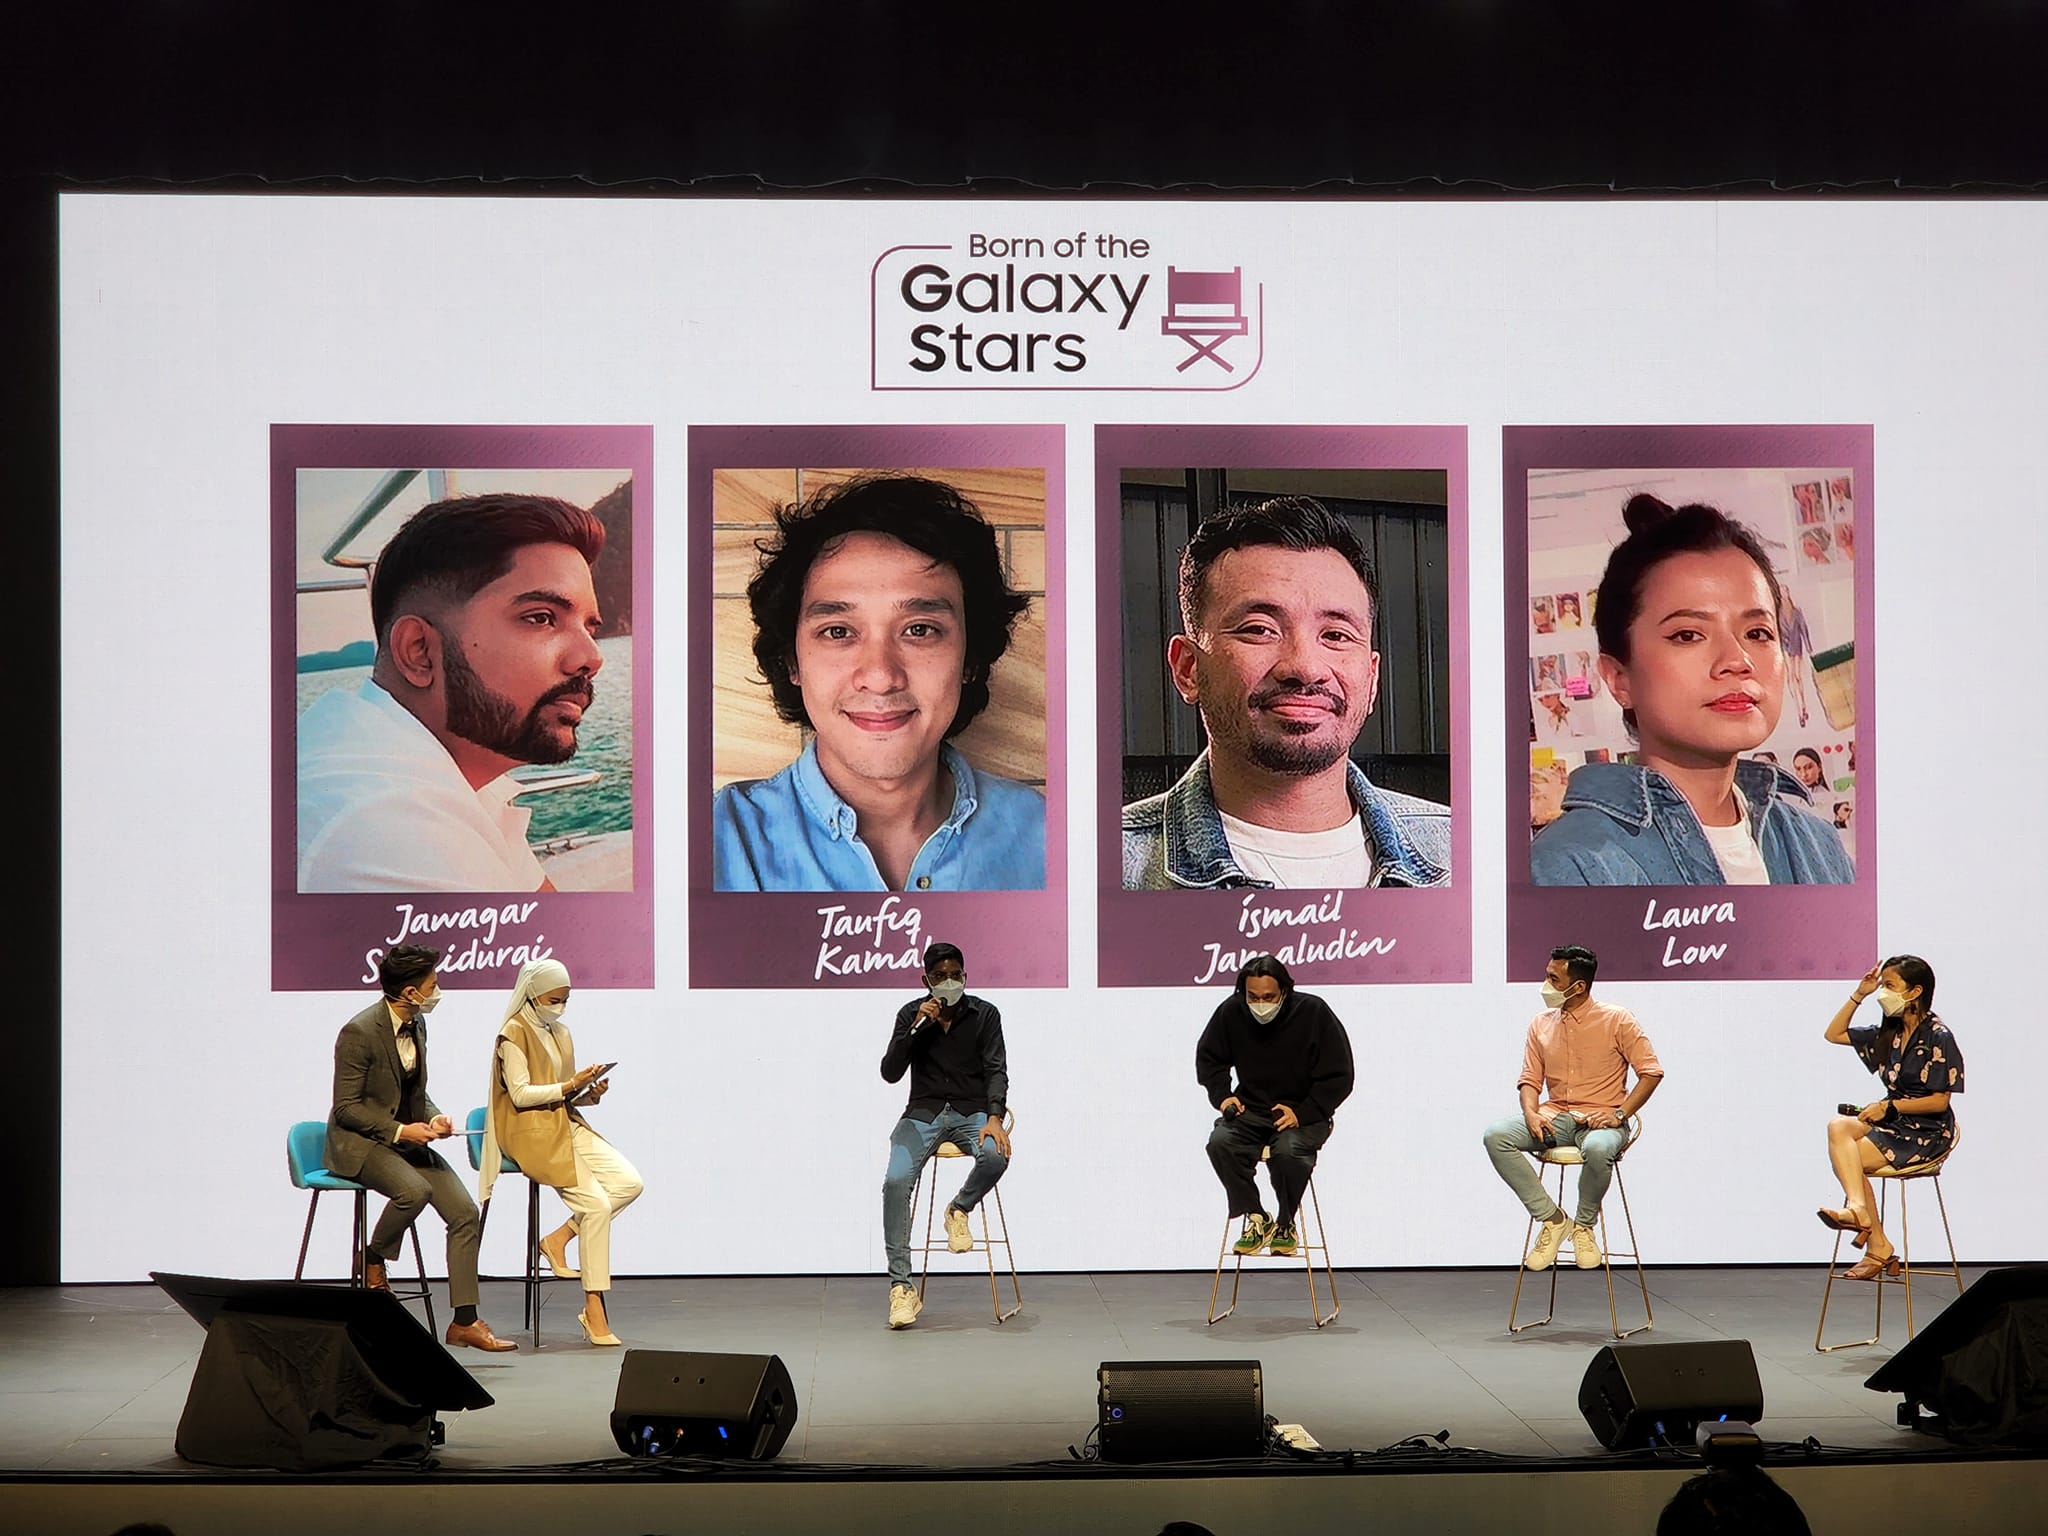 Samsung 聯手馬來西亞國際電影節推出 Born of the Galaxy Stars 短片攝影競賽；得獎作品將在 MIFFest 上首映！ 2